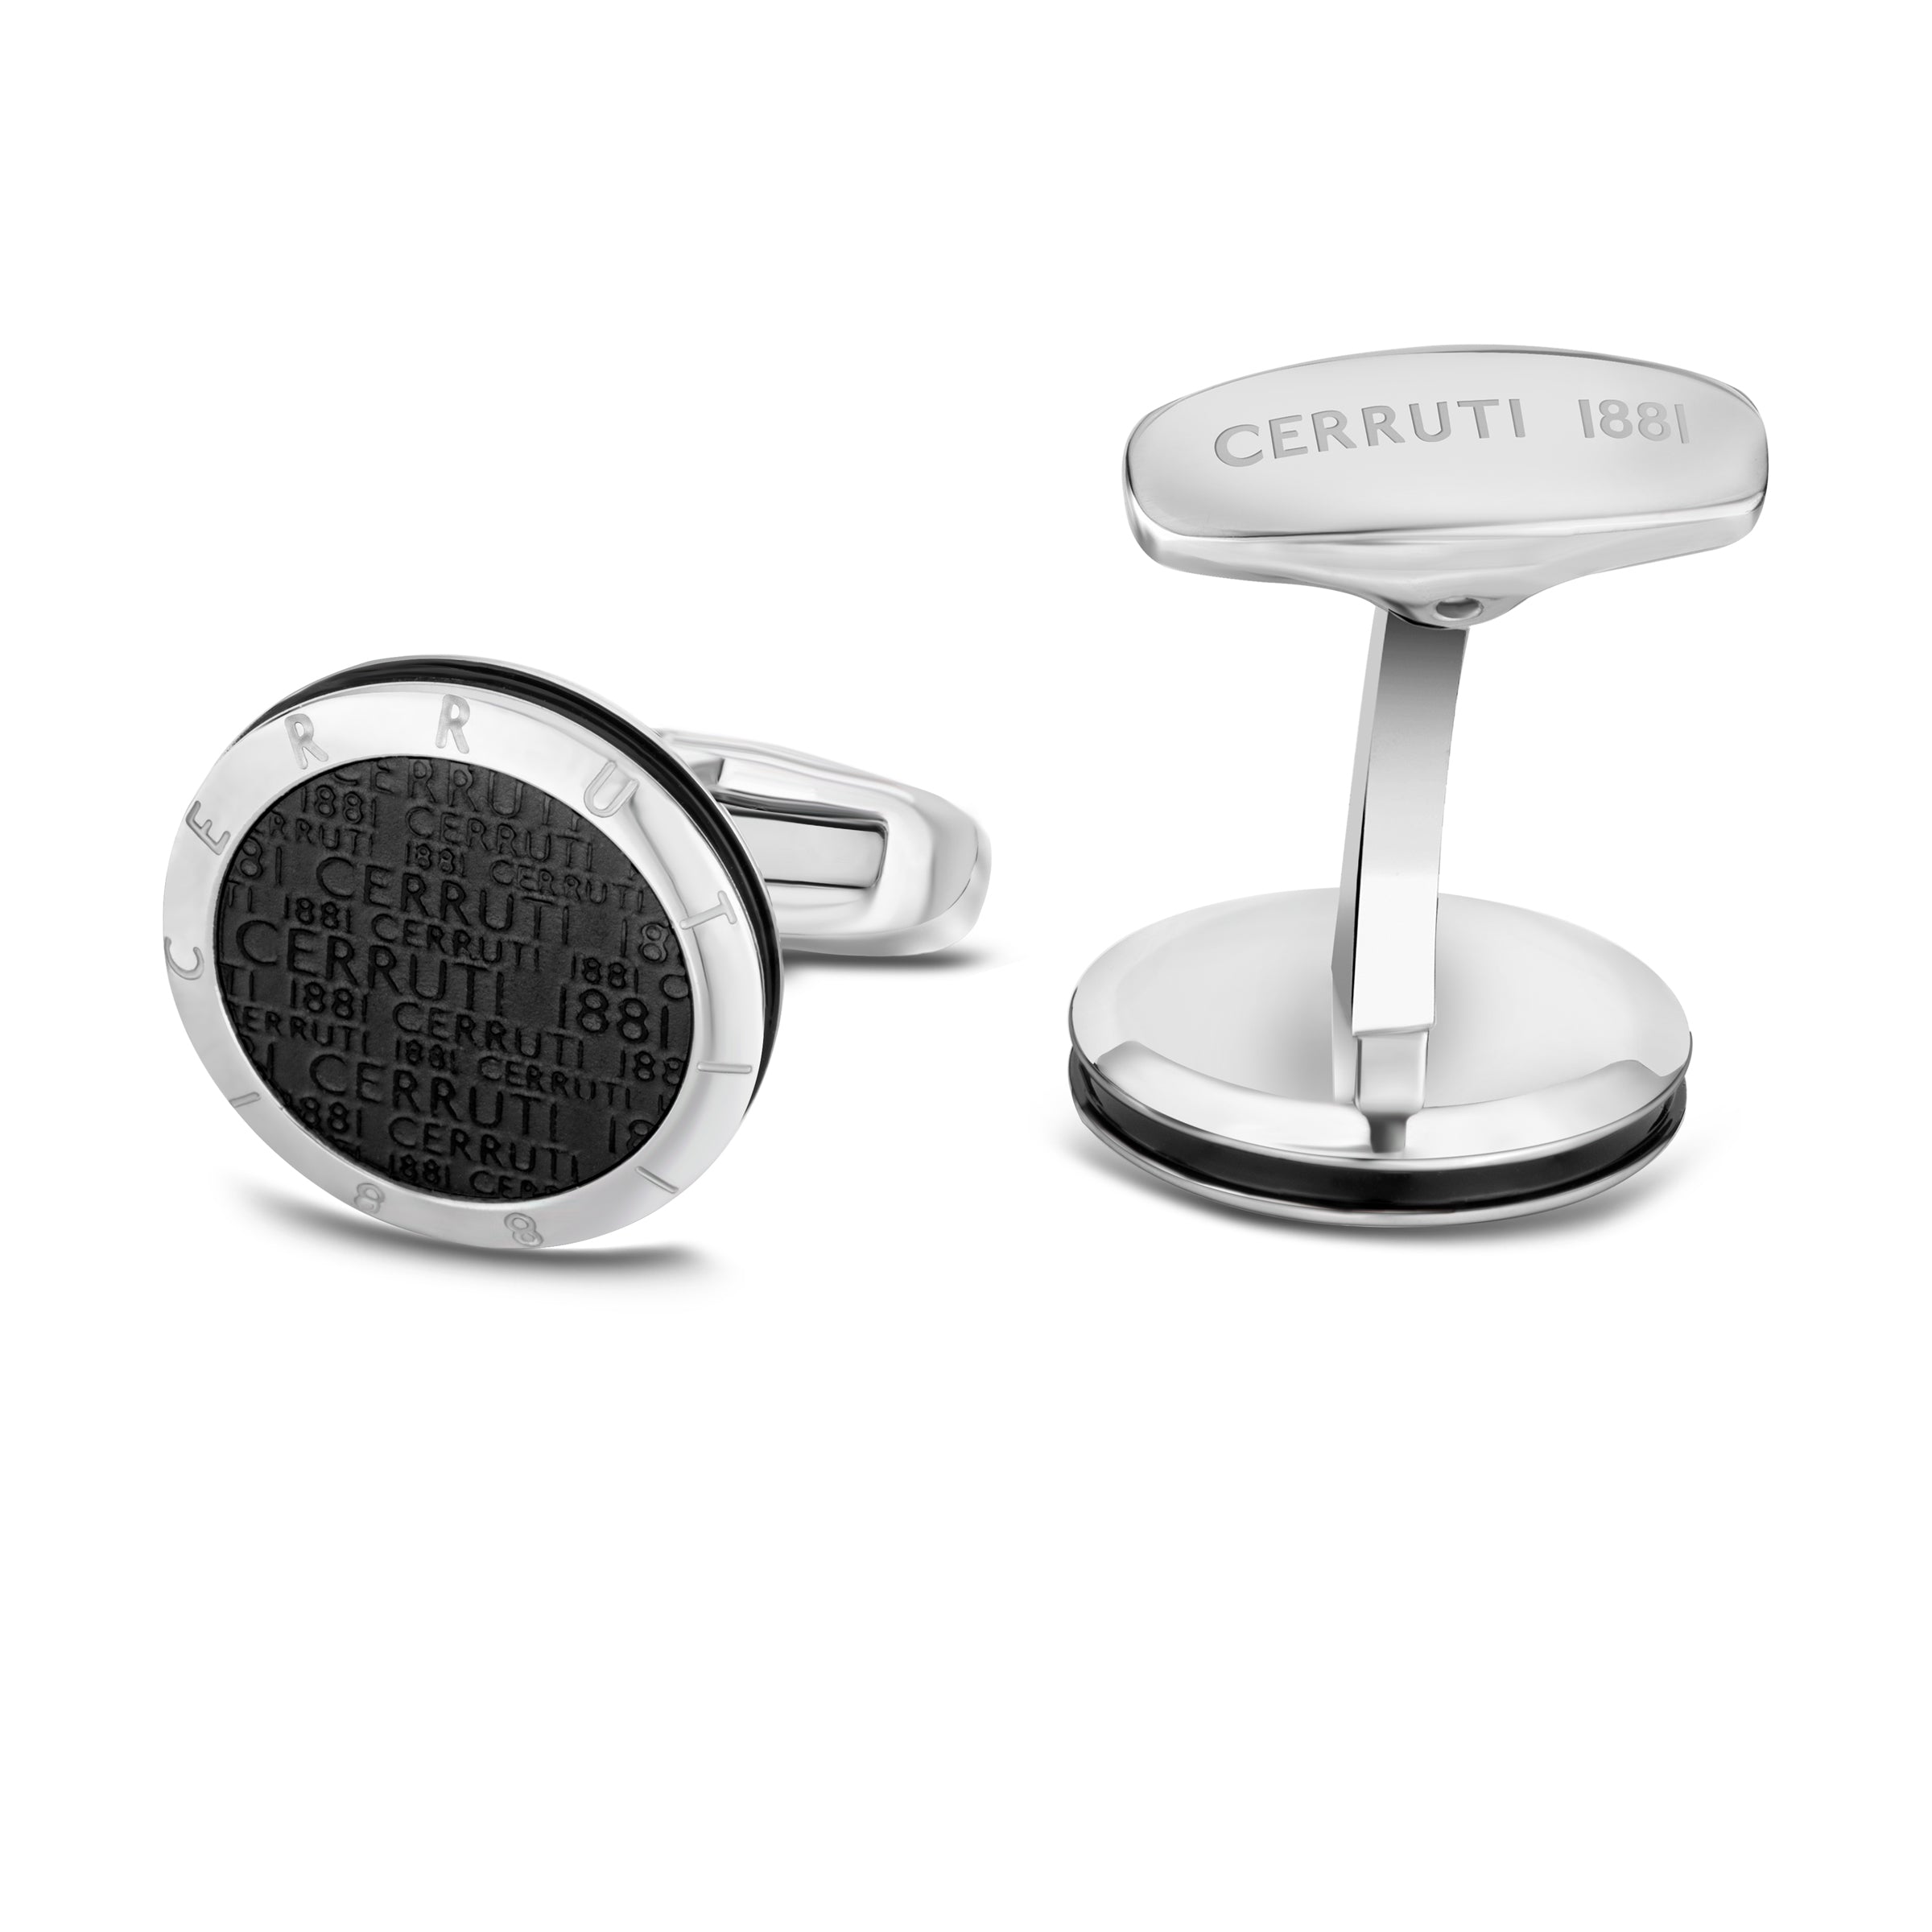 Cerruti silver cufflinks - CERCF-0087